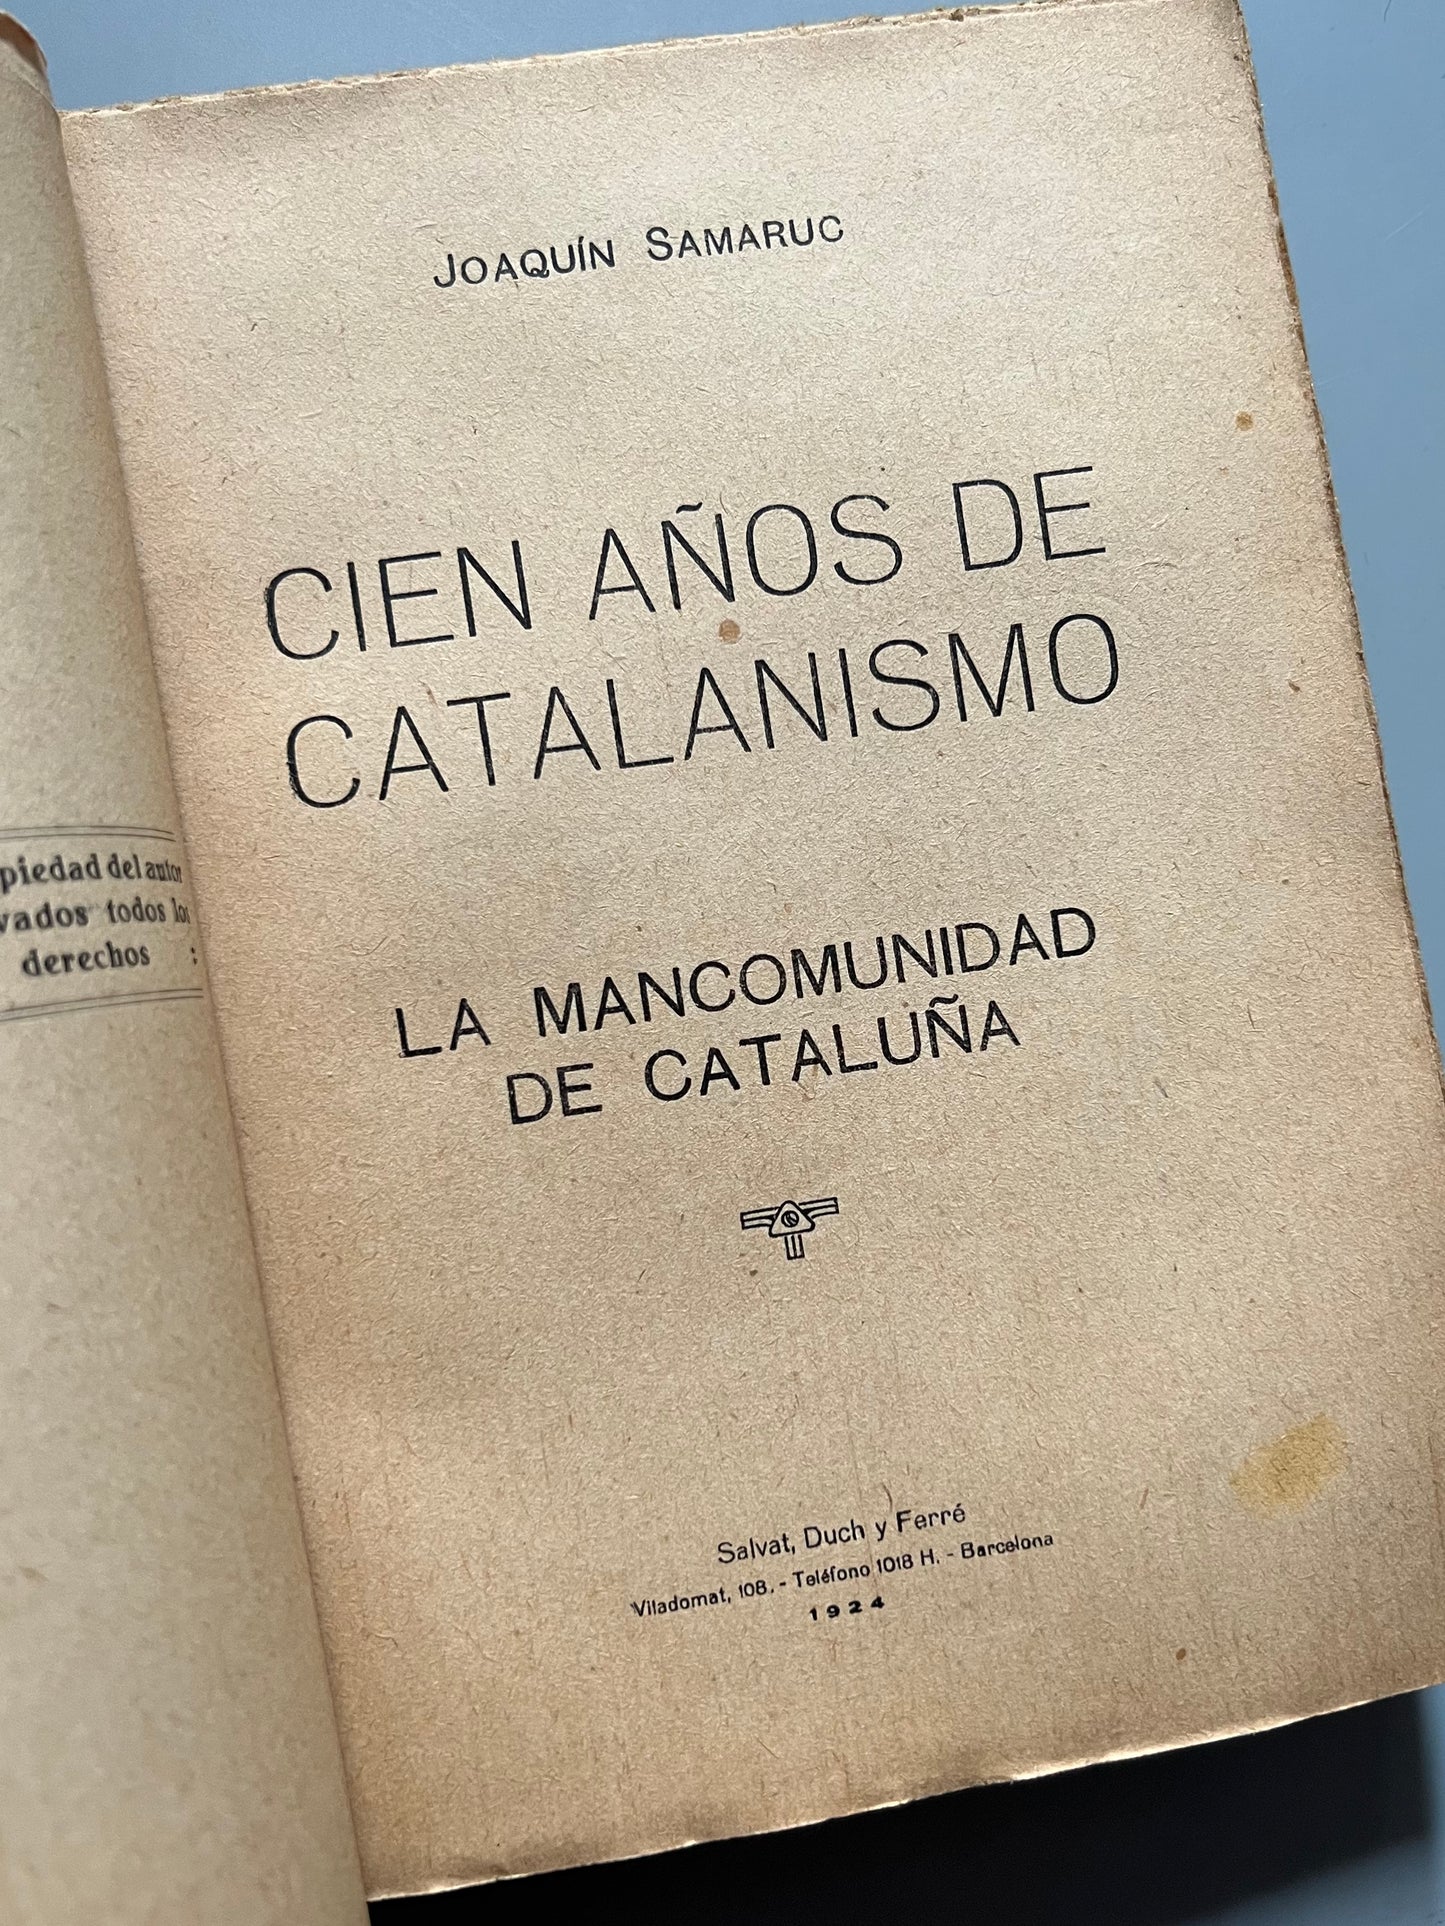 Cien años de catalanismo, La Mancomunidad de Cataluña, Joaquín Samaruc (Firmado) - Salvat Duch i Ferré, 1924